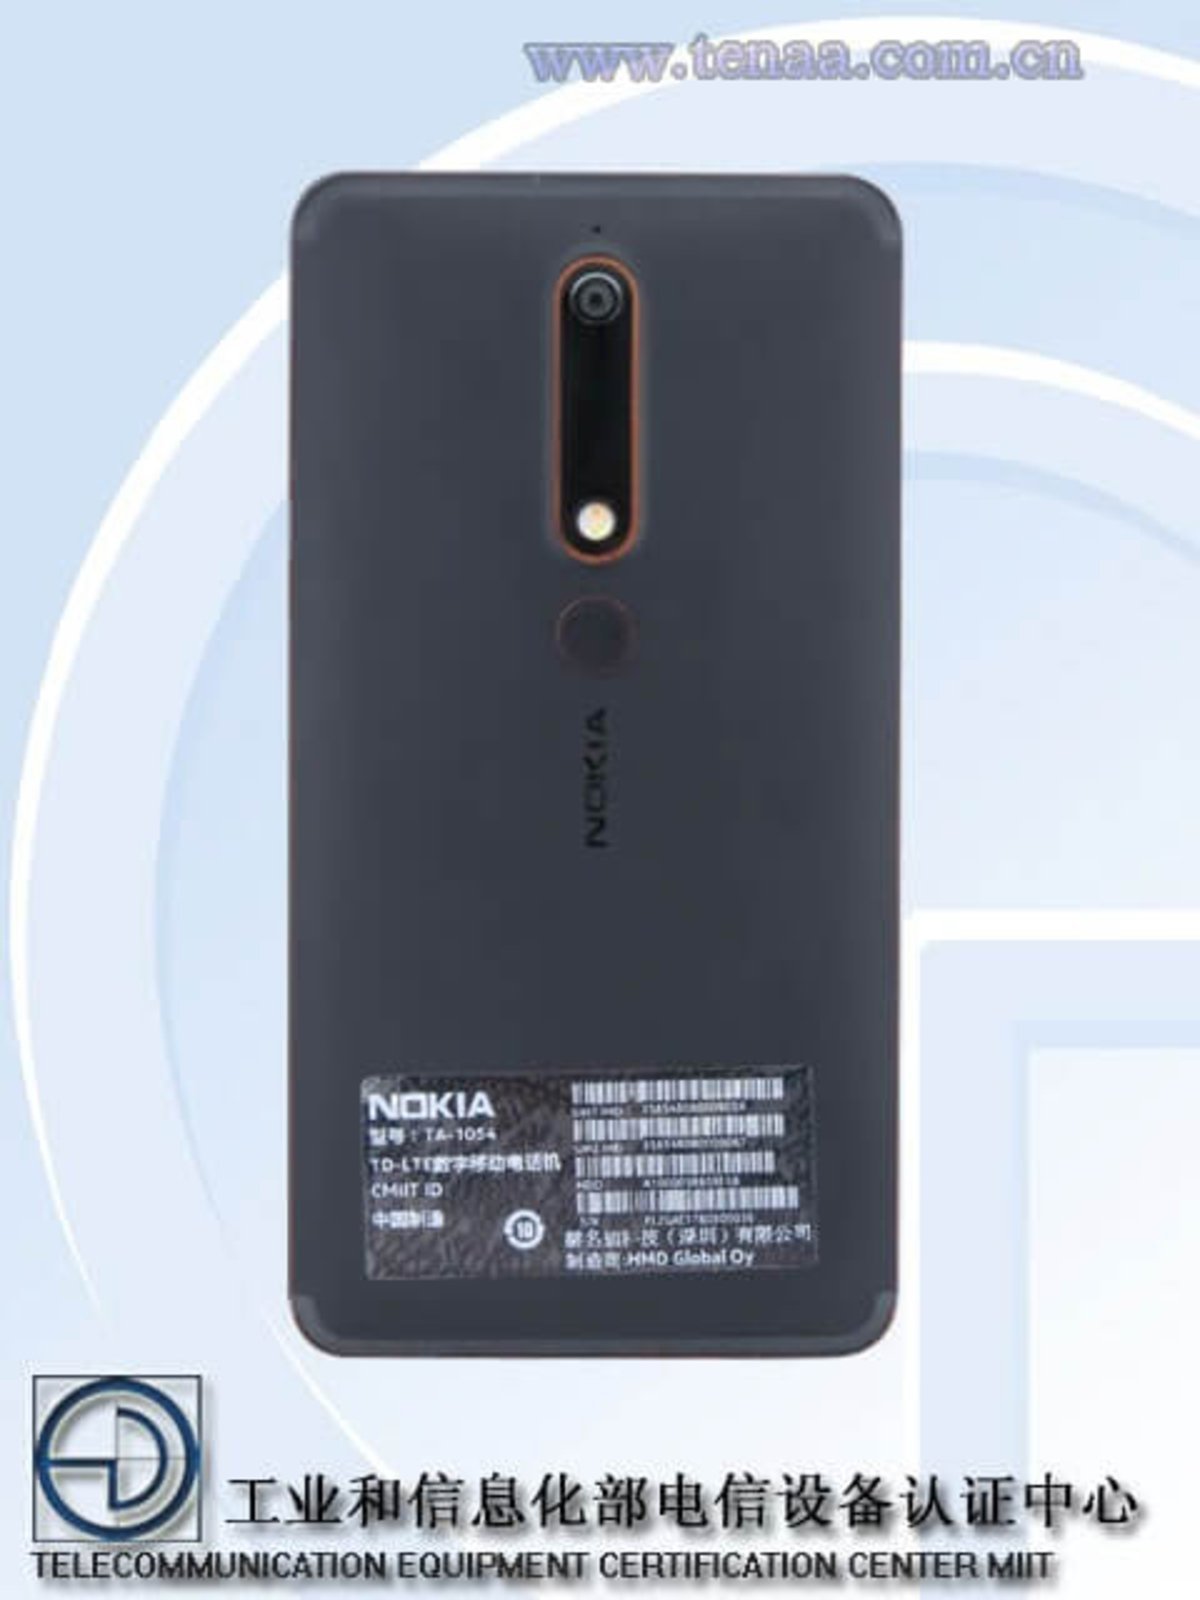 Nokia 6 2018, imágenes y características filtradas